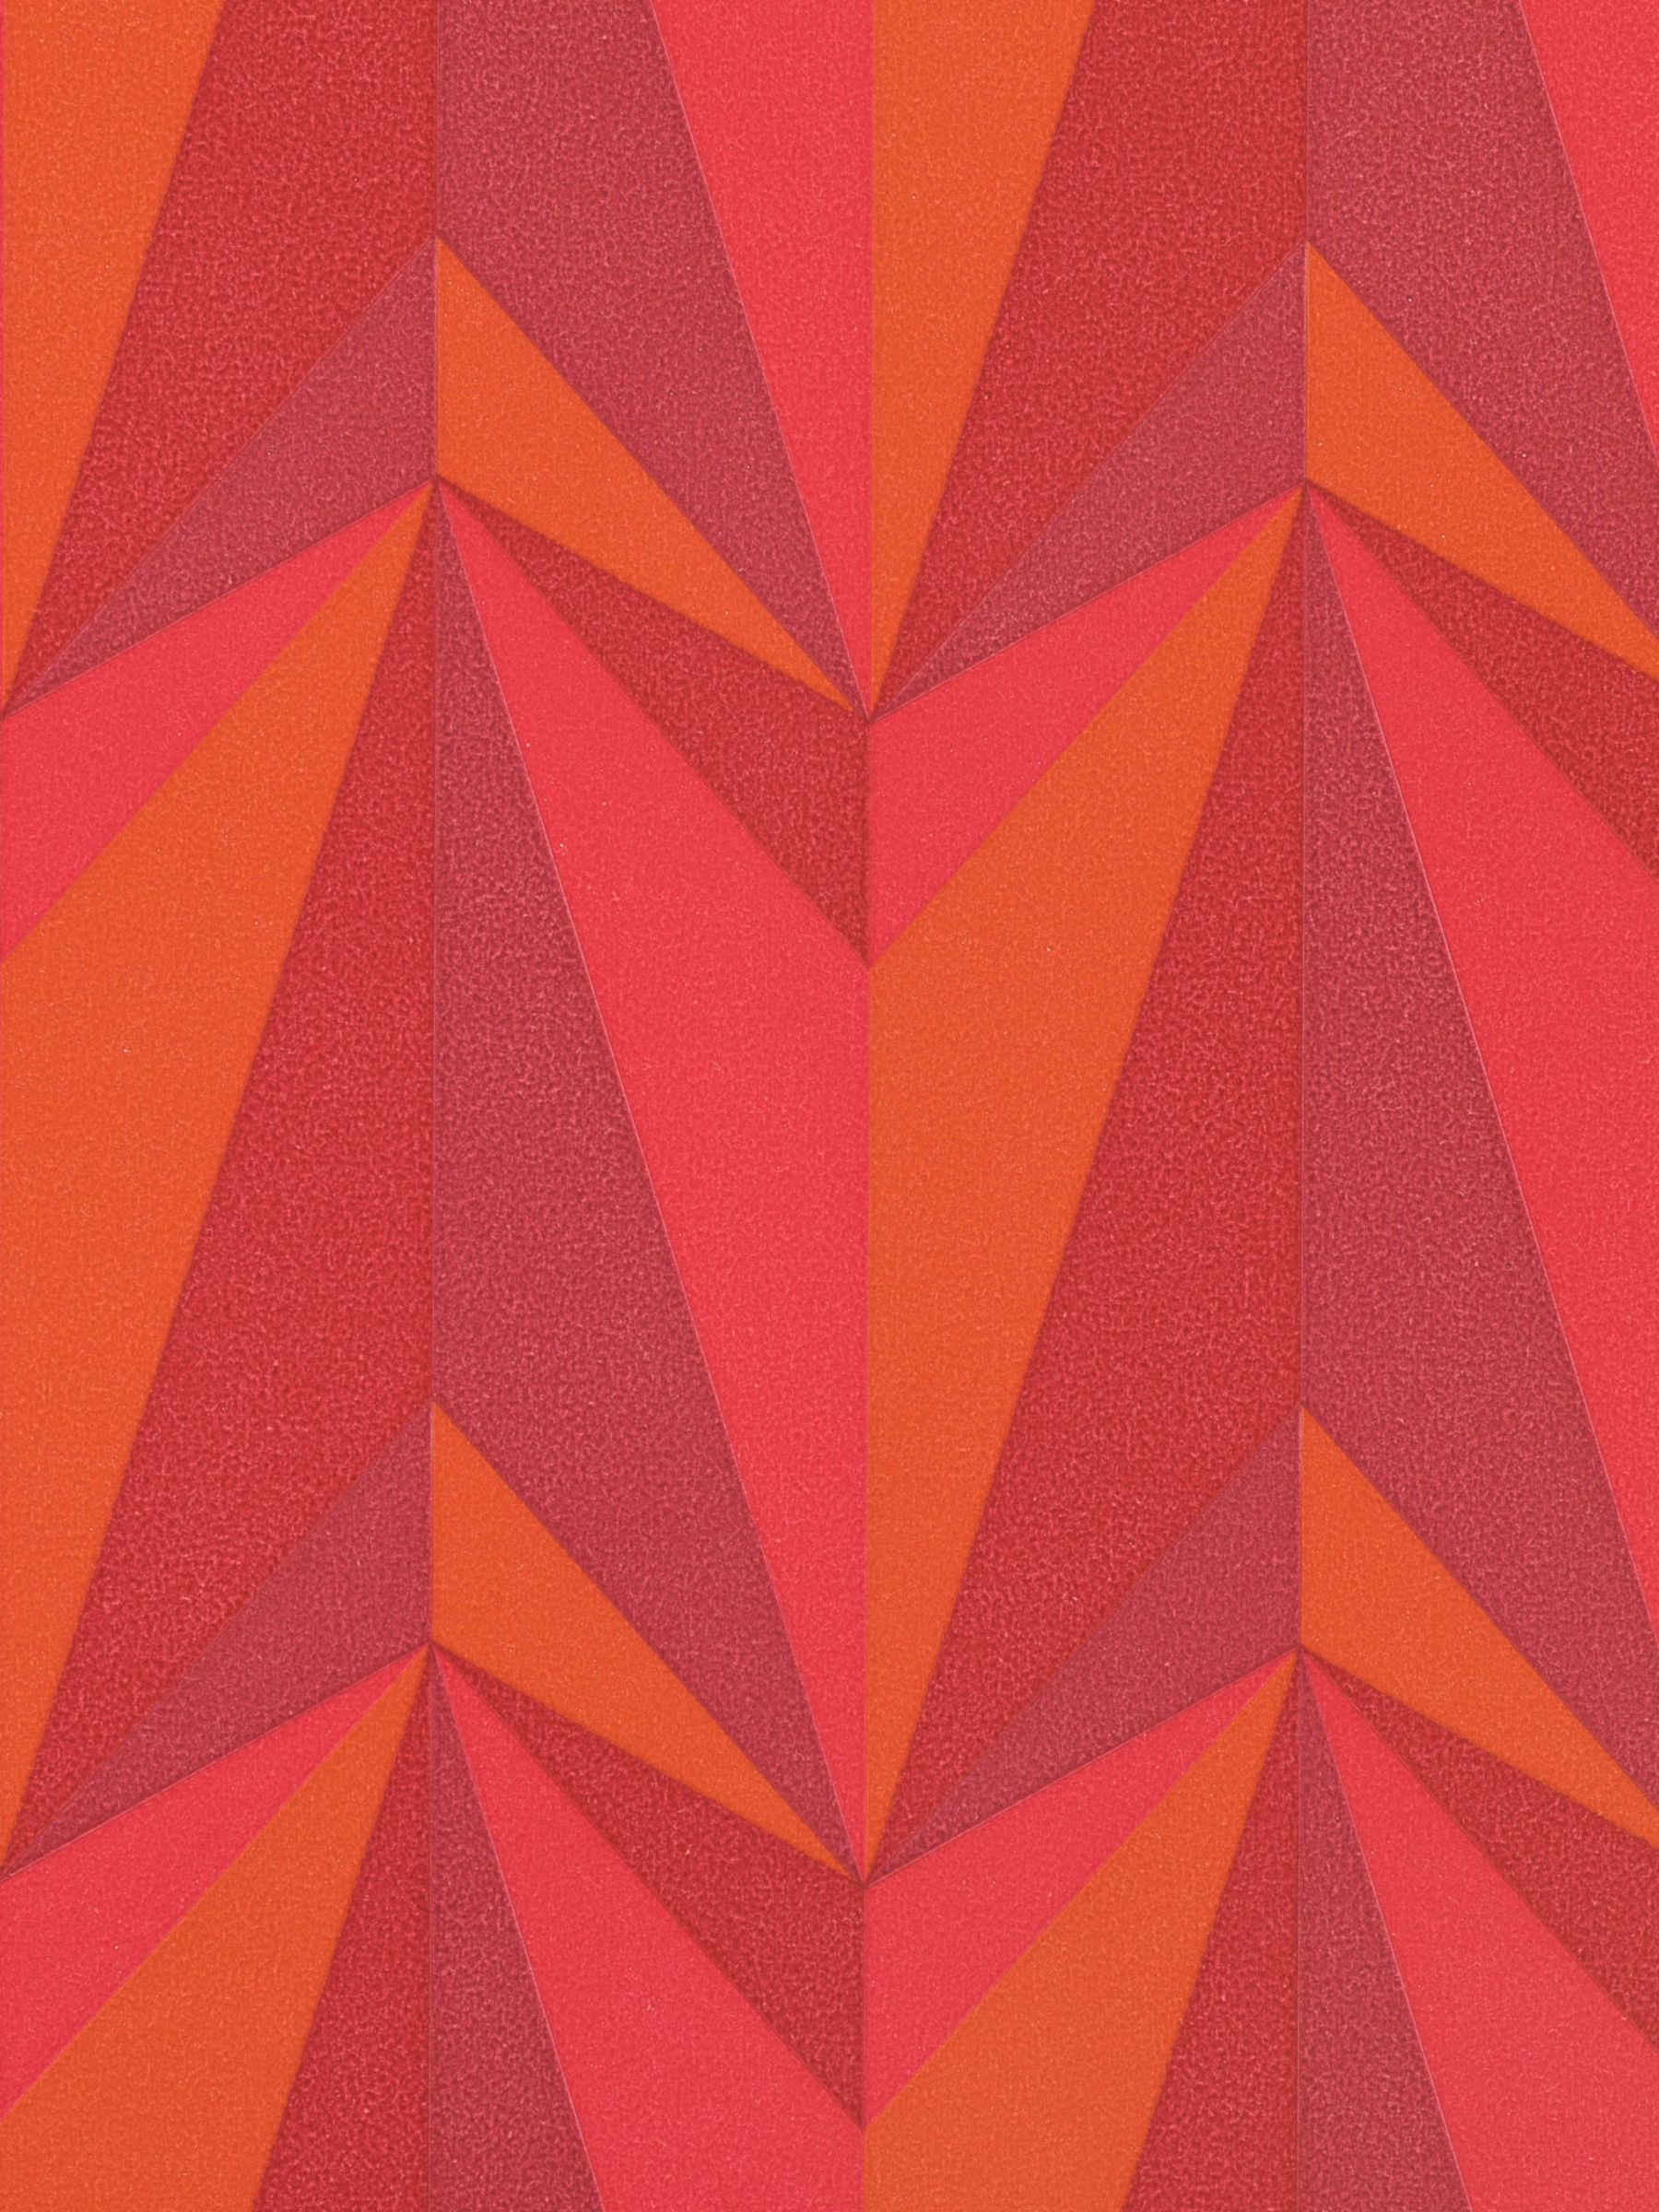 範囲の壁紙デザイン,オレンジ,パターン,赤,三角形,設計